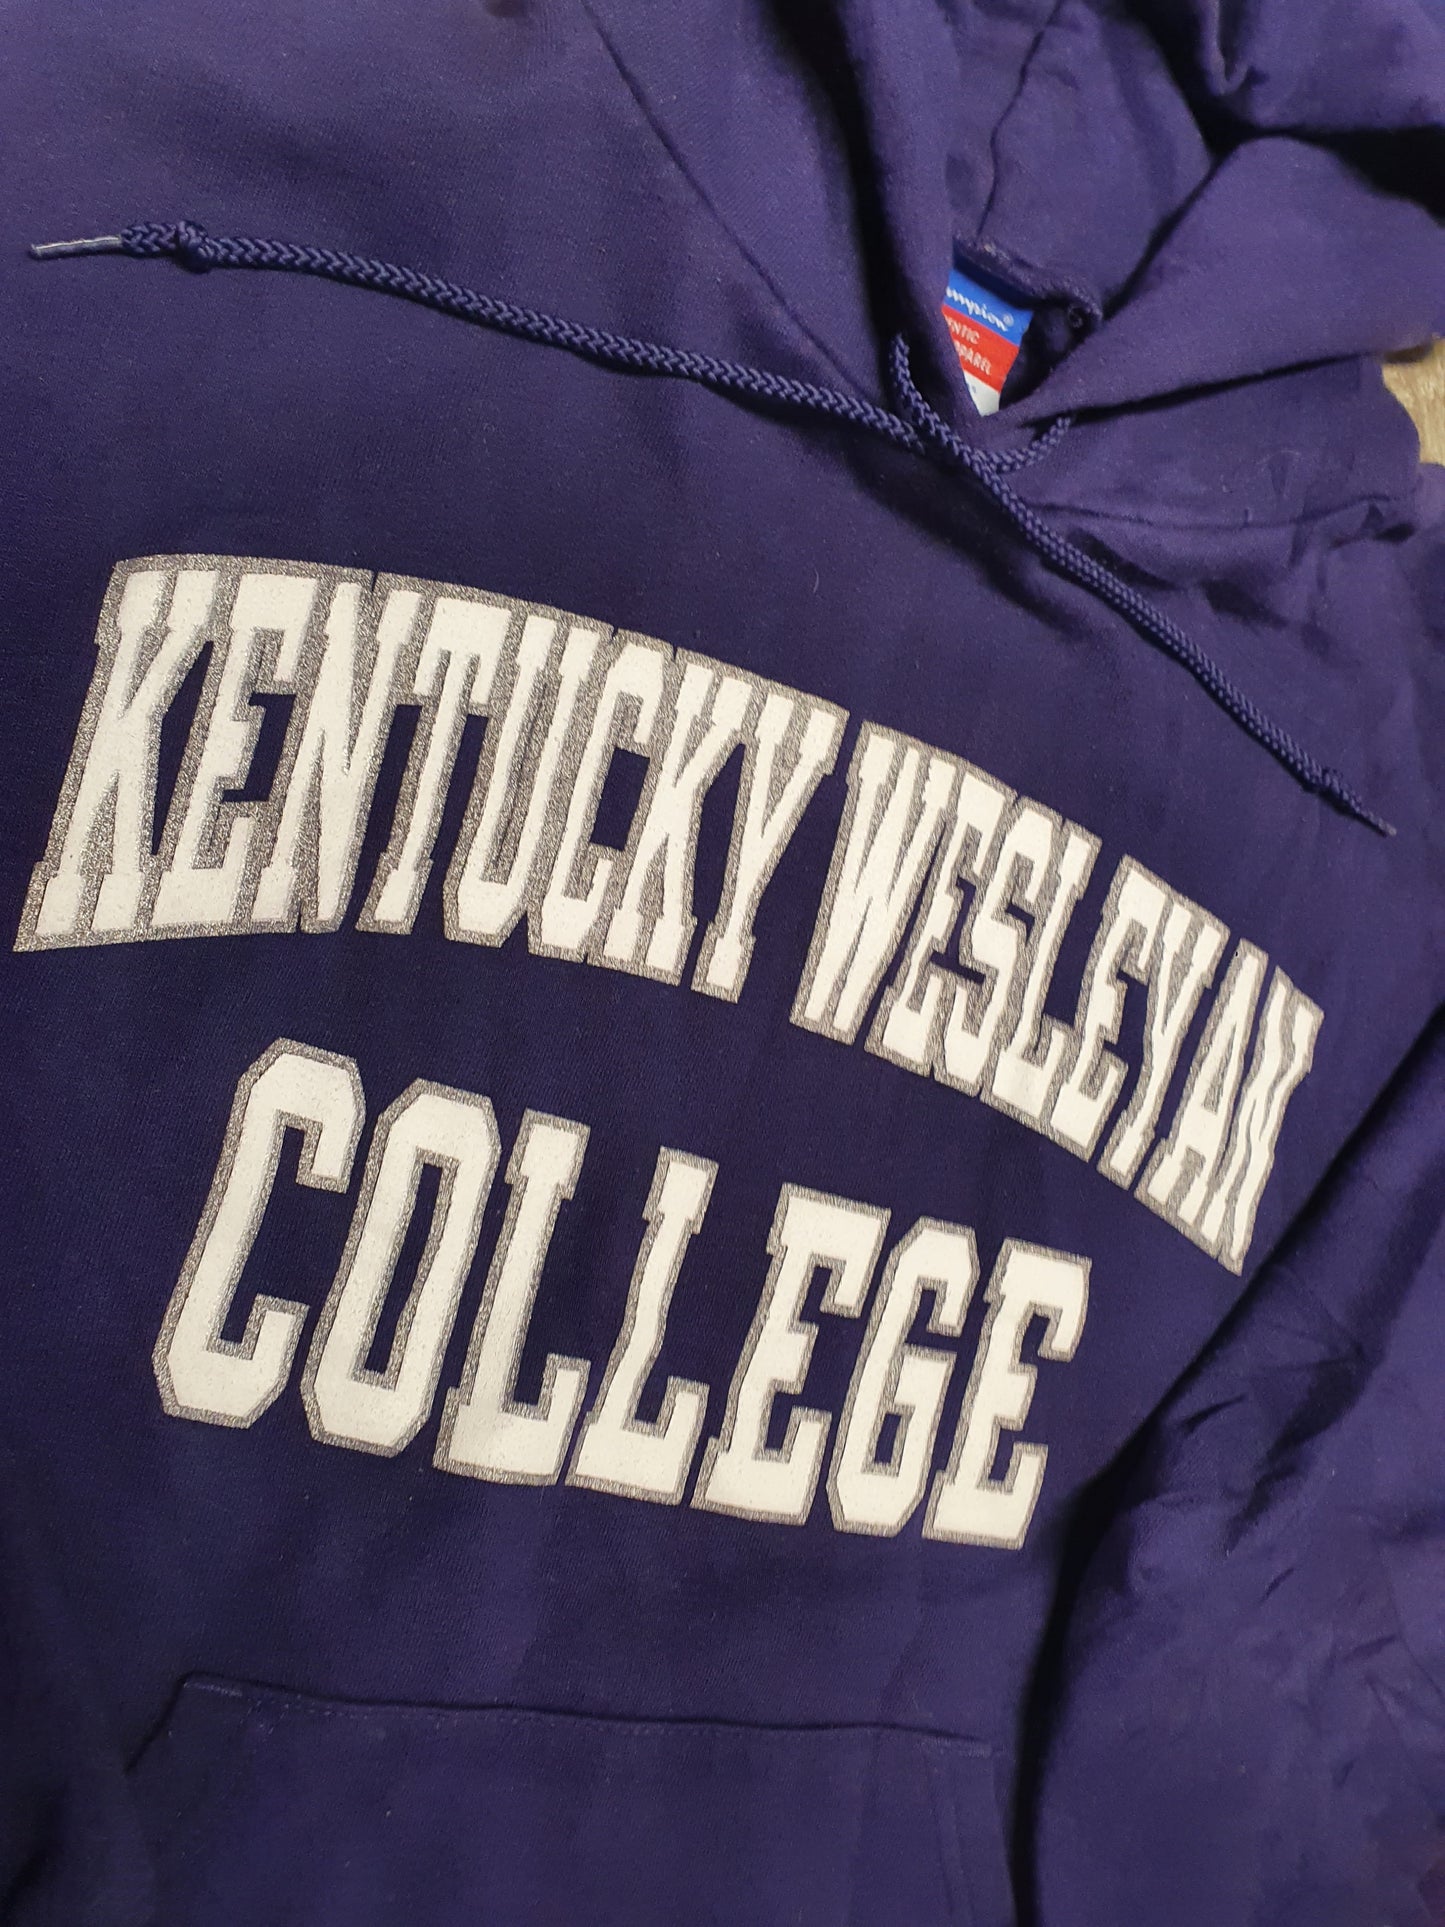 Kentucky Wesleyan College Sweater Hoodie Size Medium